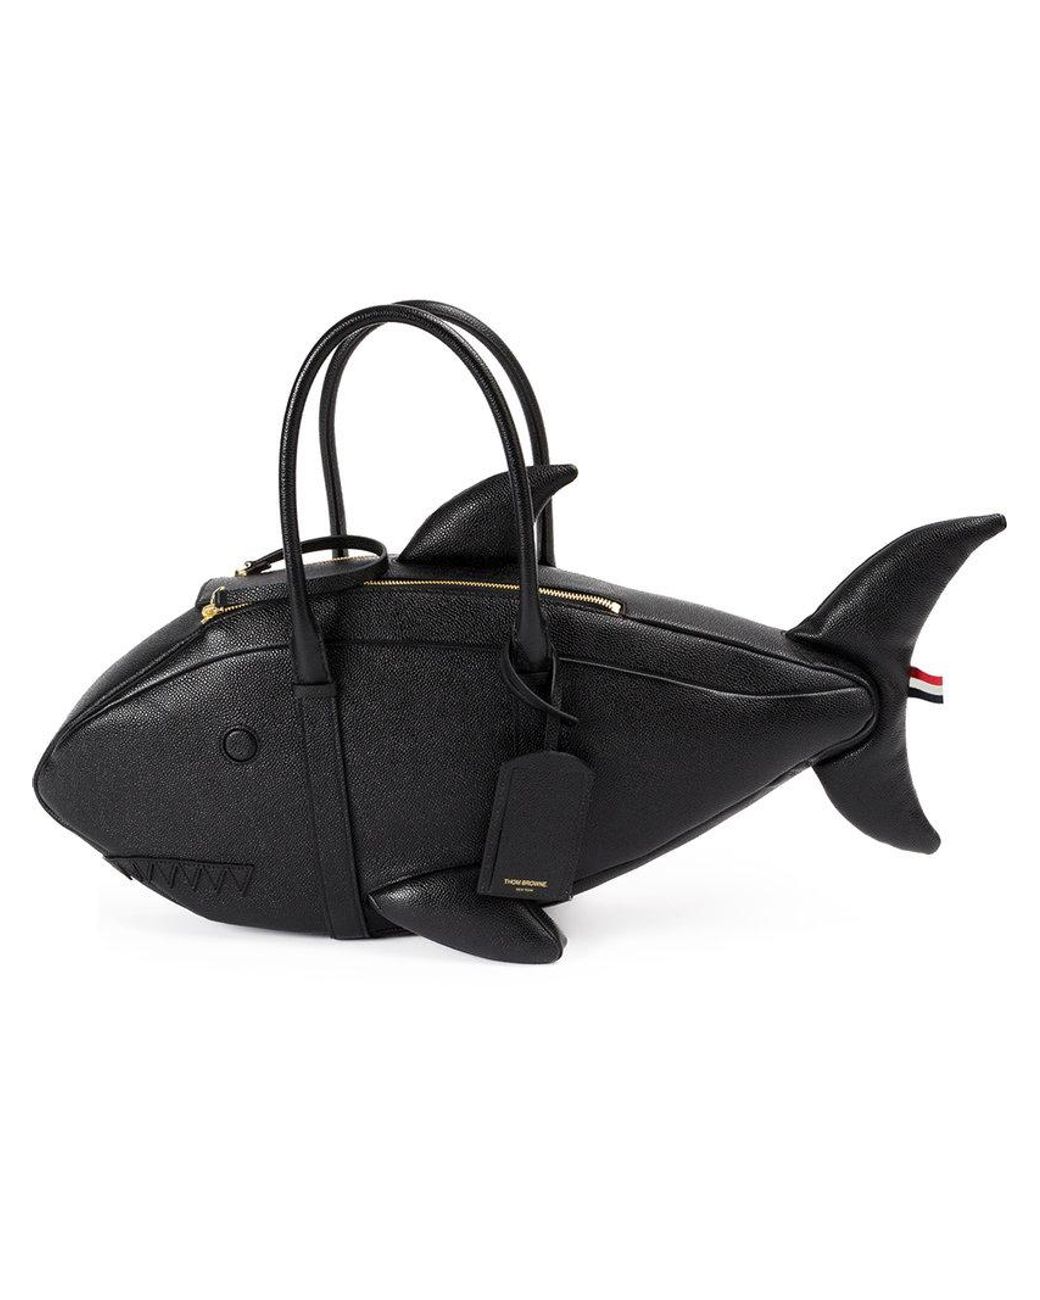 Aquatic Arts Aquarium Breather Bags